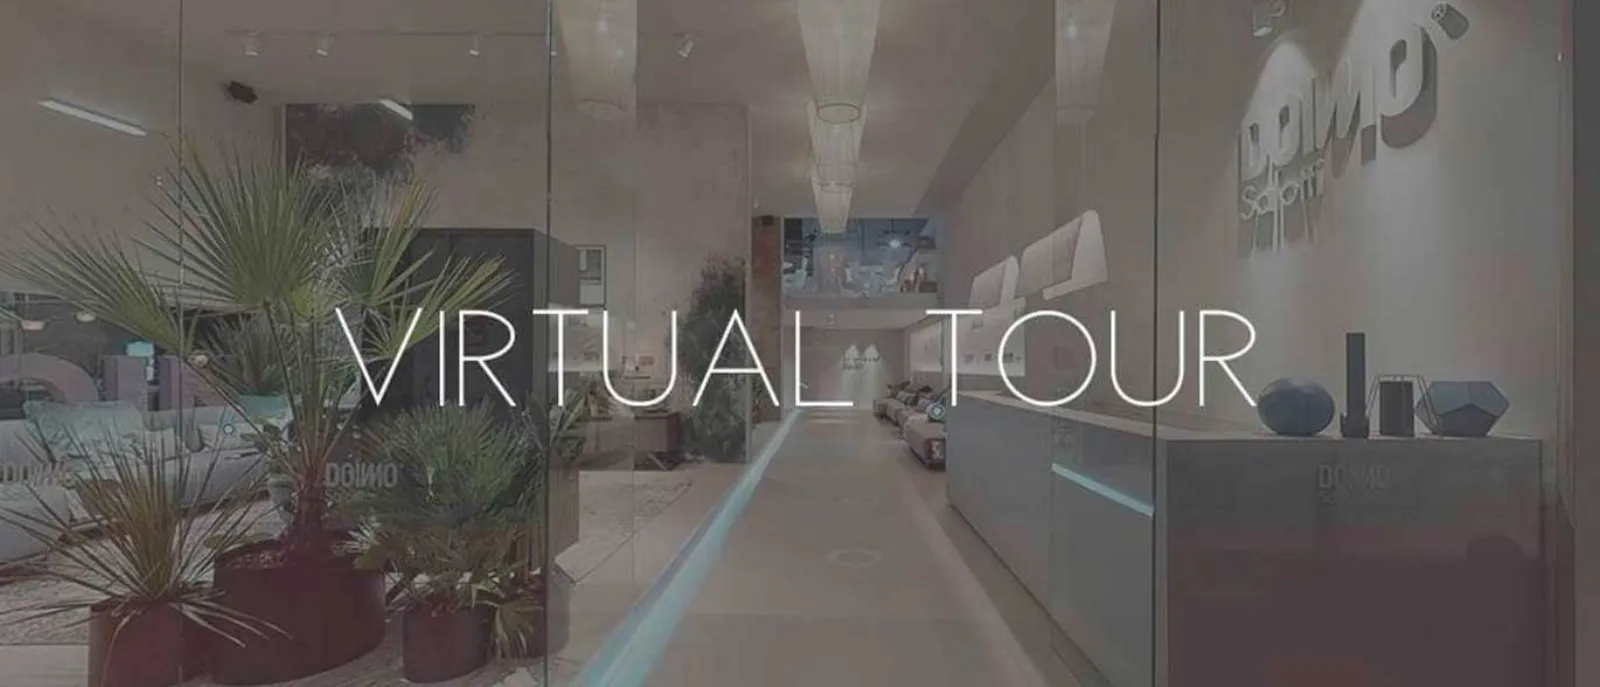 Salone del mobile virtual tour